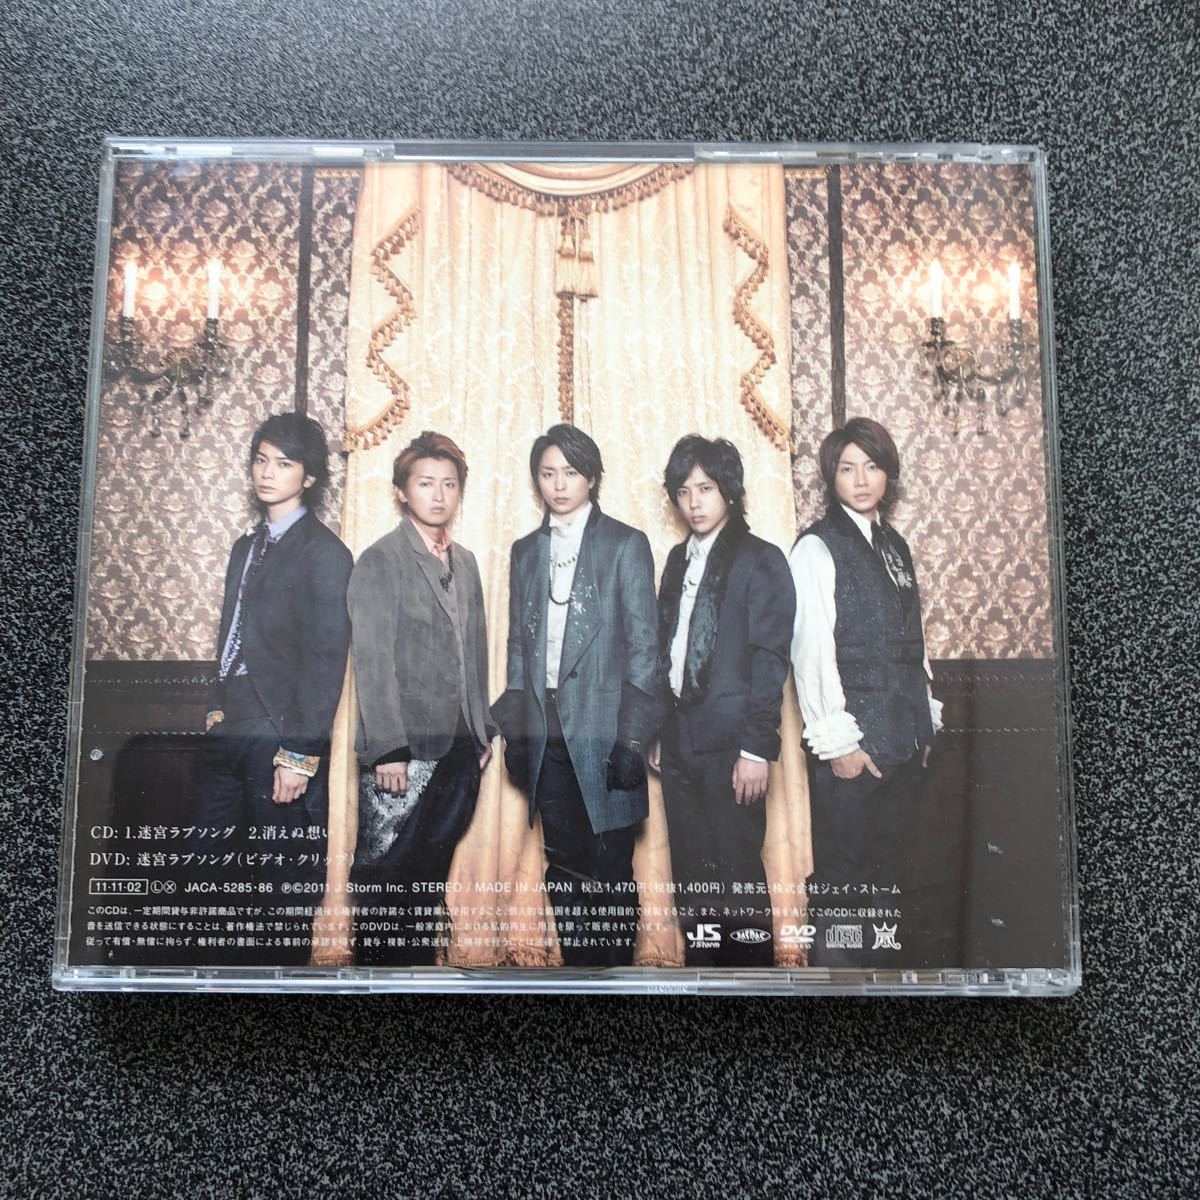 嵐 迷宮ラブソング 初回限定盤 嵐CD CD+DVD シングル 初回プレス 謎解きはディナーのあとで主題歌